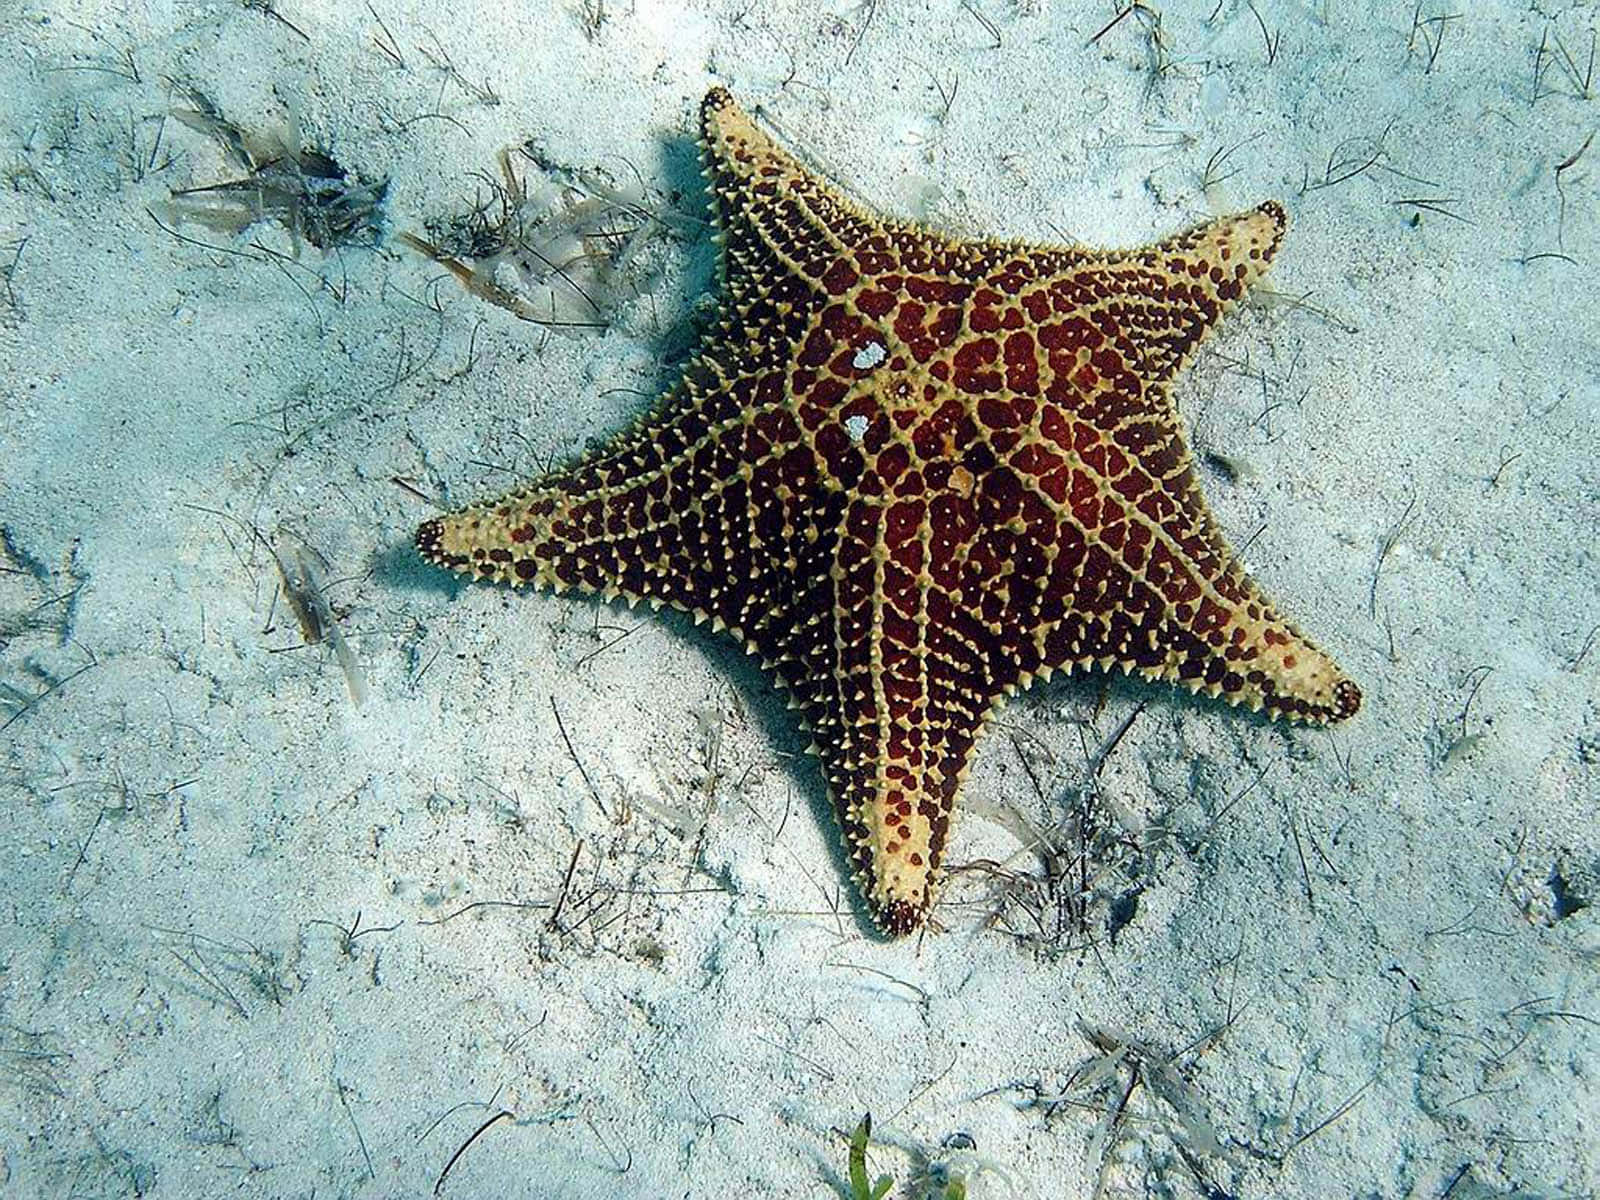 A starfish lives on the ocean floor